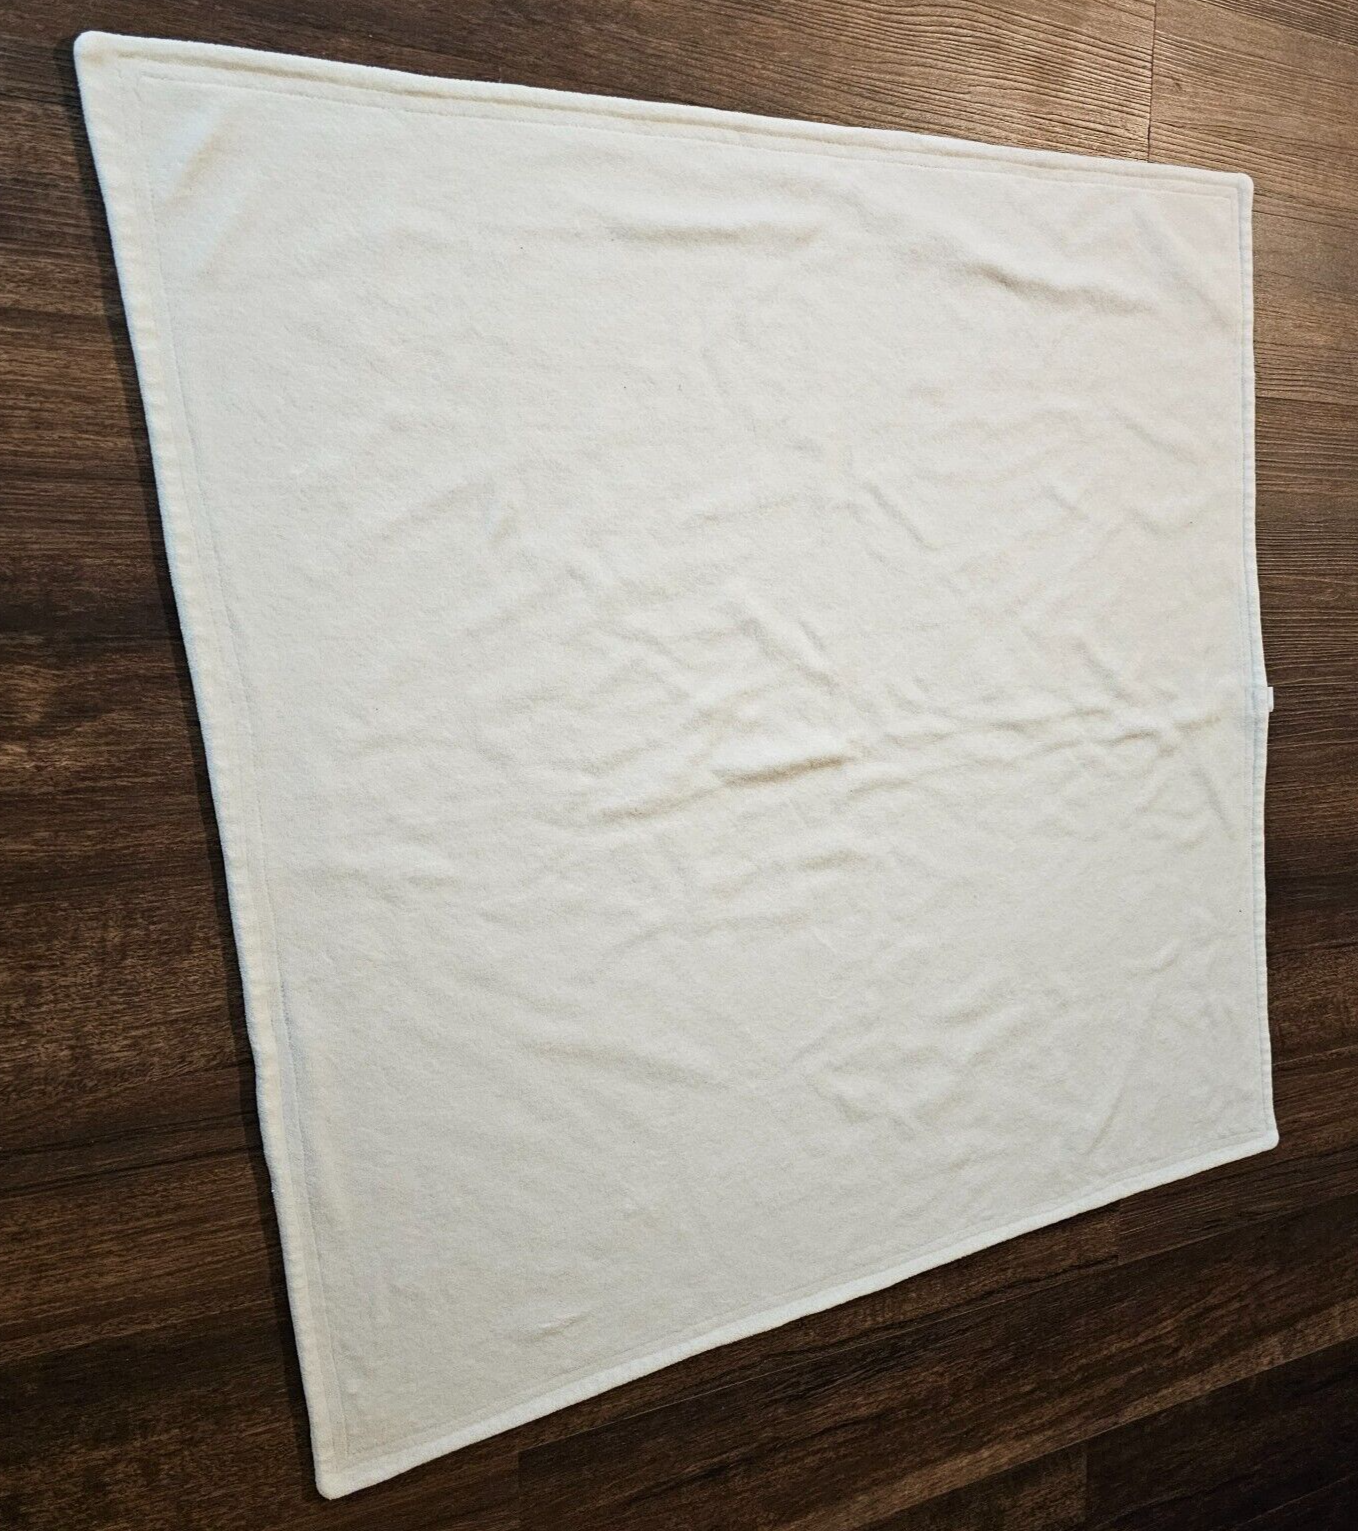 Primary image for Vintage Baby Gap 2003 White Velour Velvet Blanket Cotton Polyester Blend 30x30"